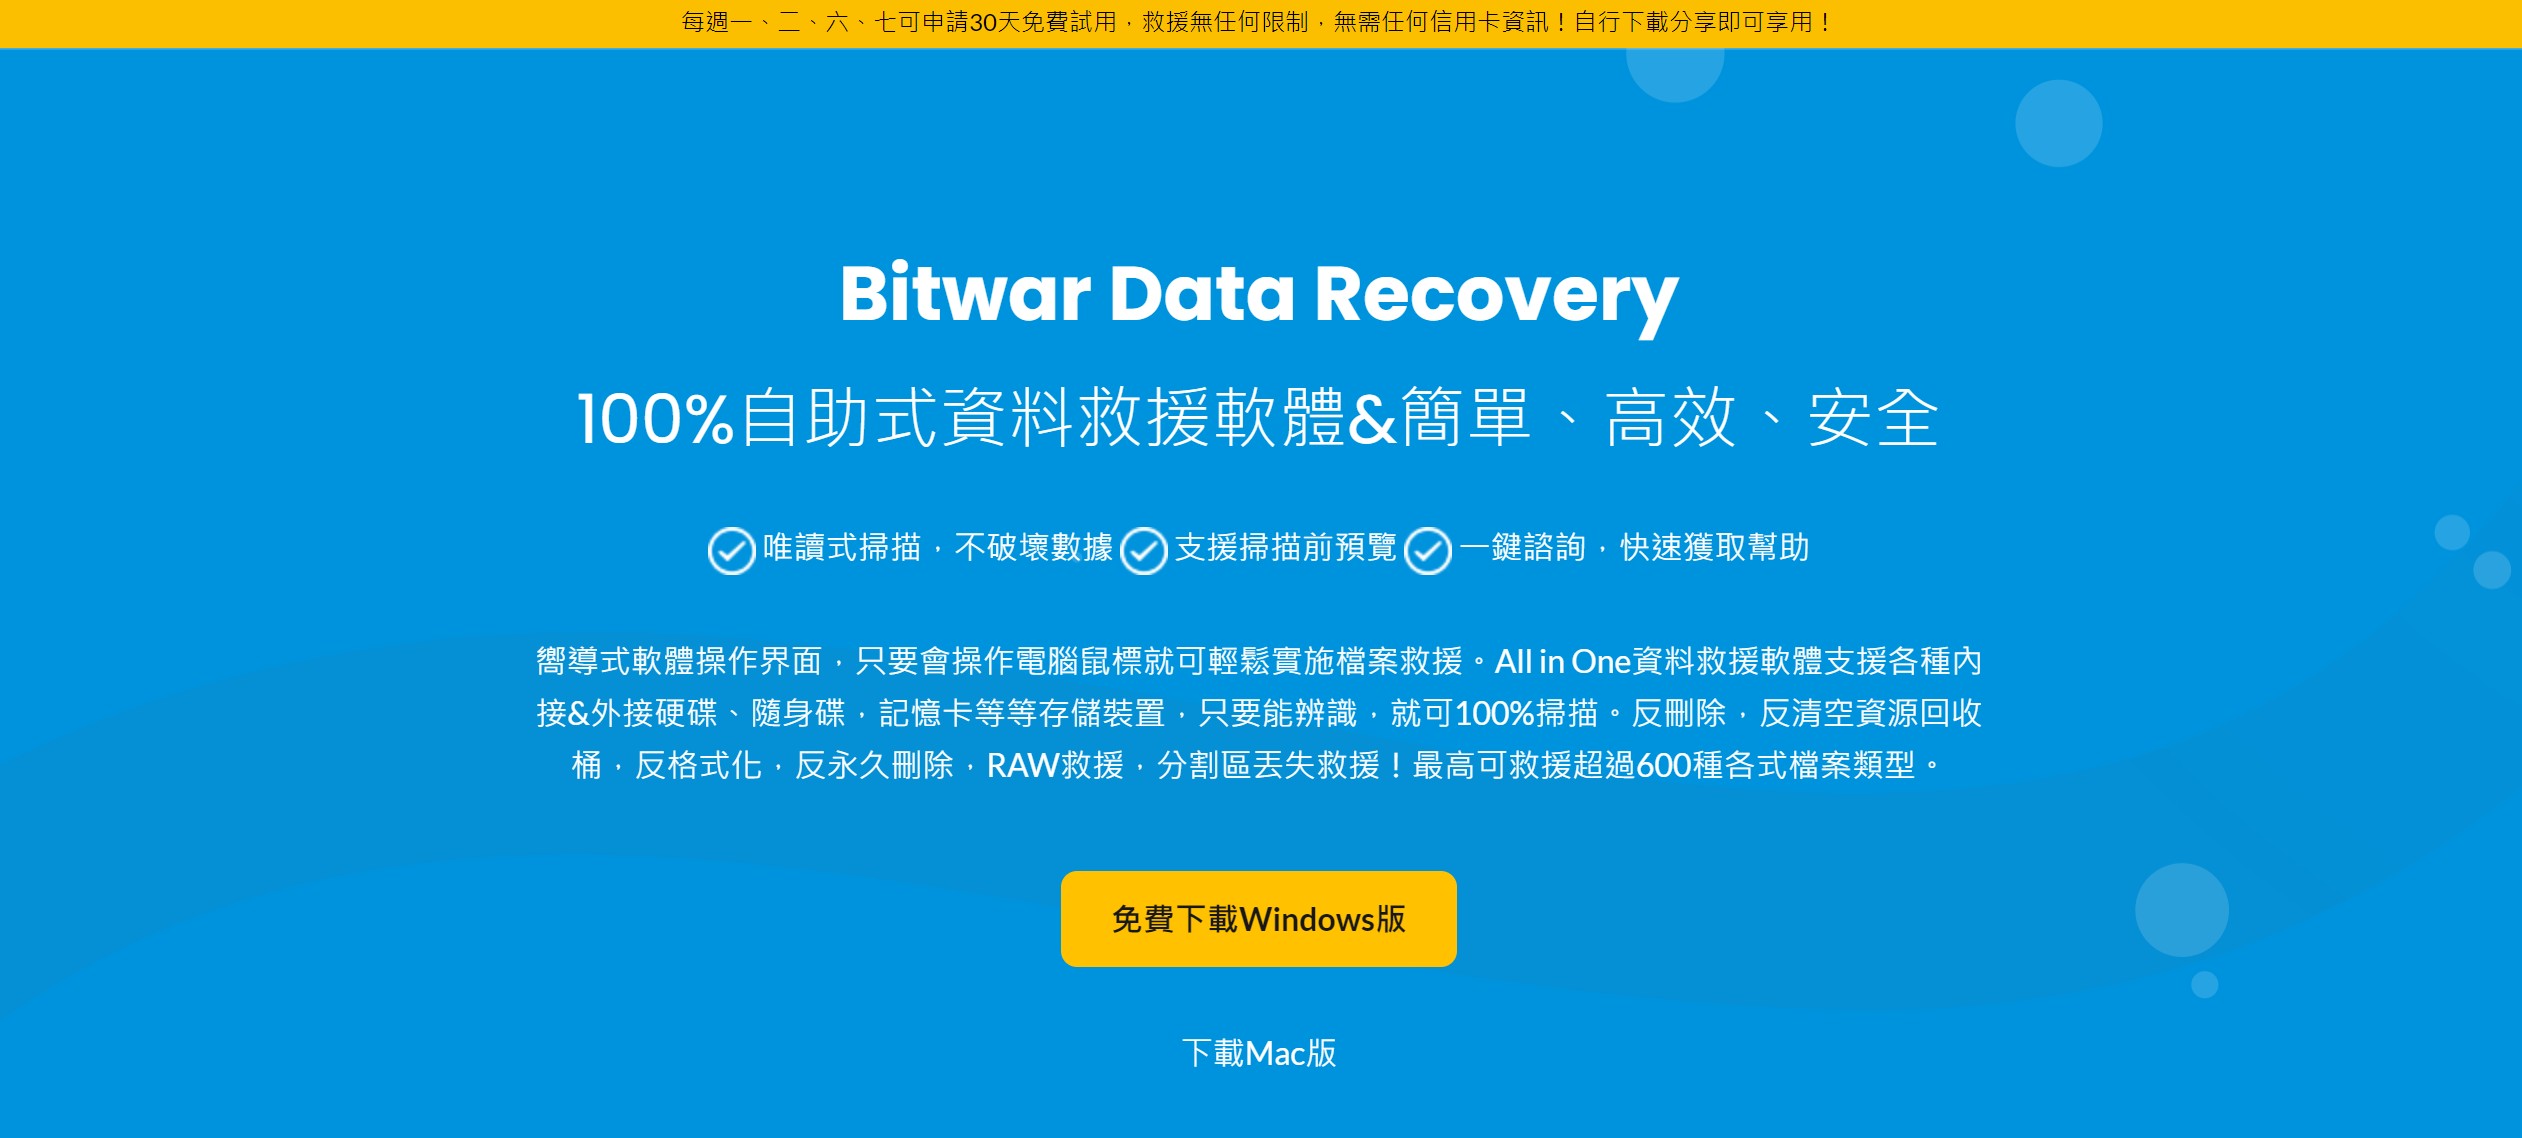 bitwar data recovery 宣傳頁面